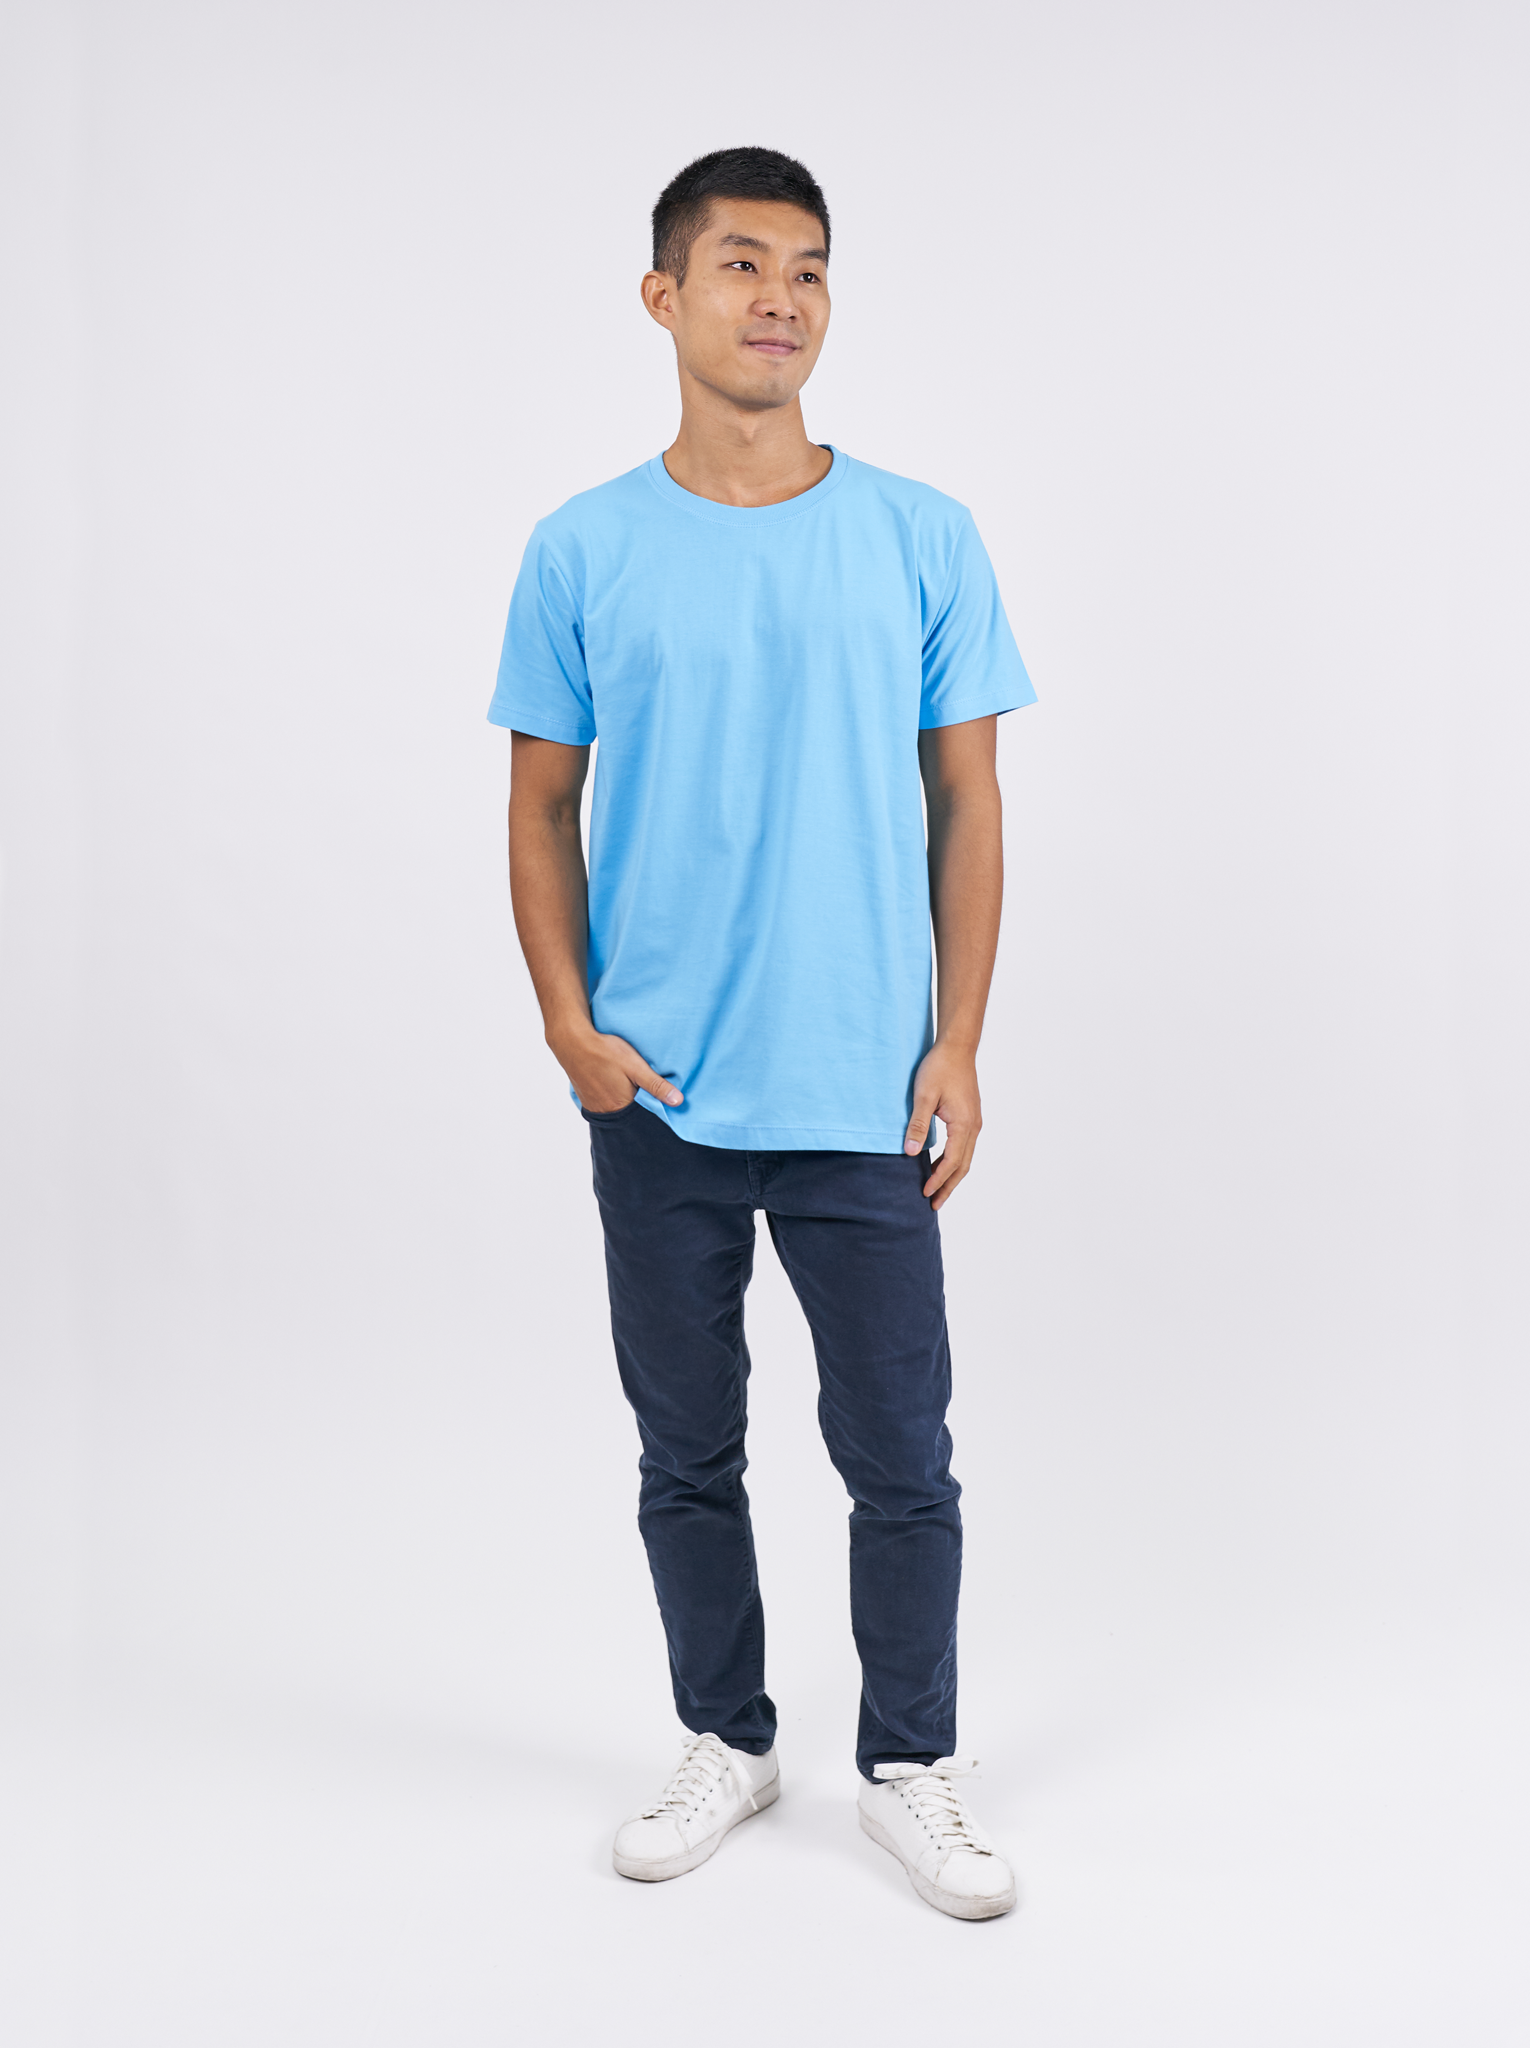 T-Shirt เสื้อยืด (Sky Blue, สีฟ้าอ่อน)(Unisex)